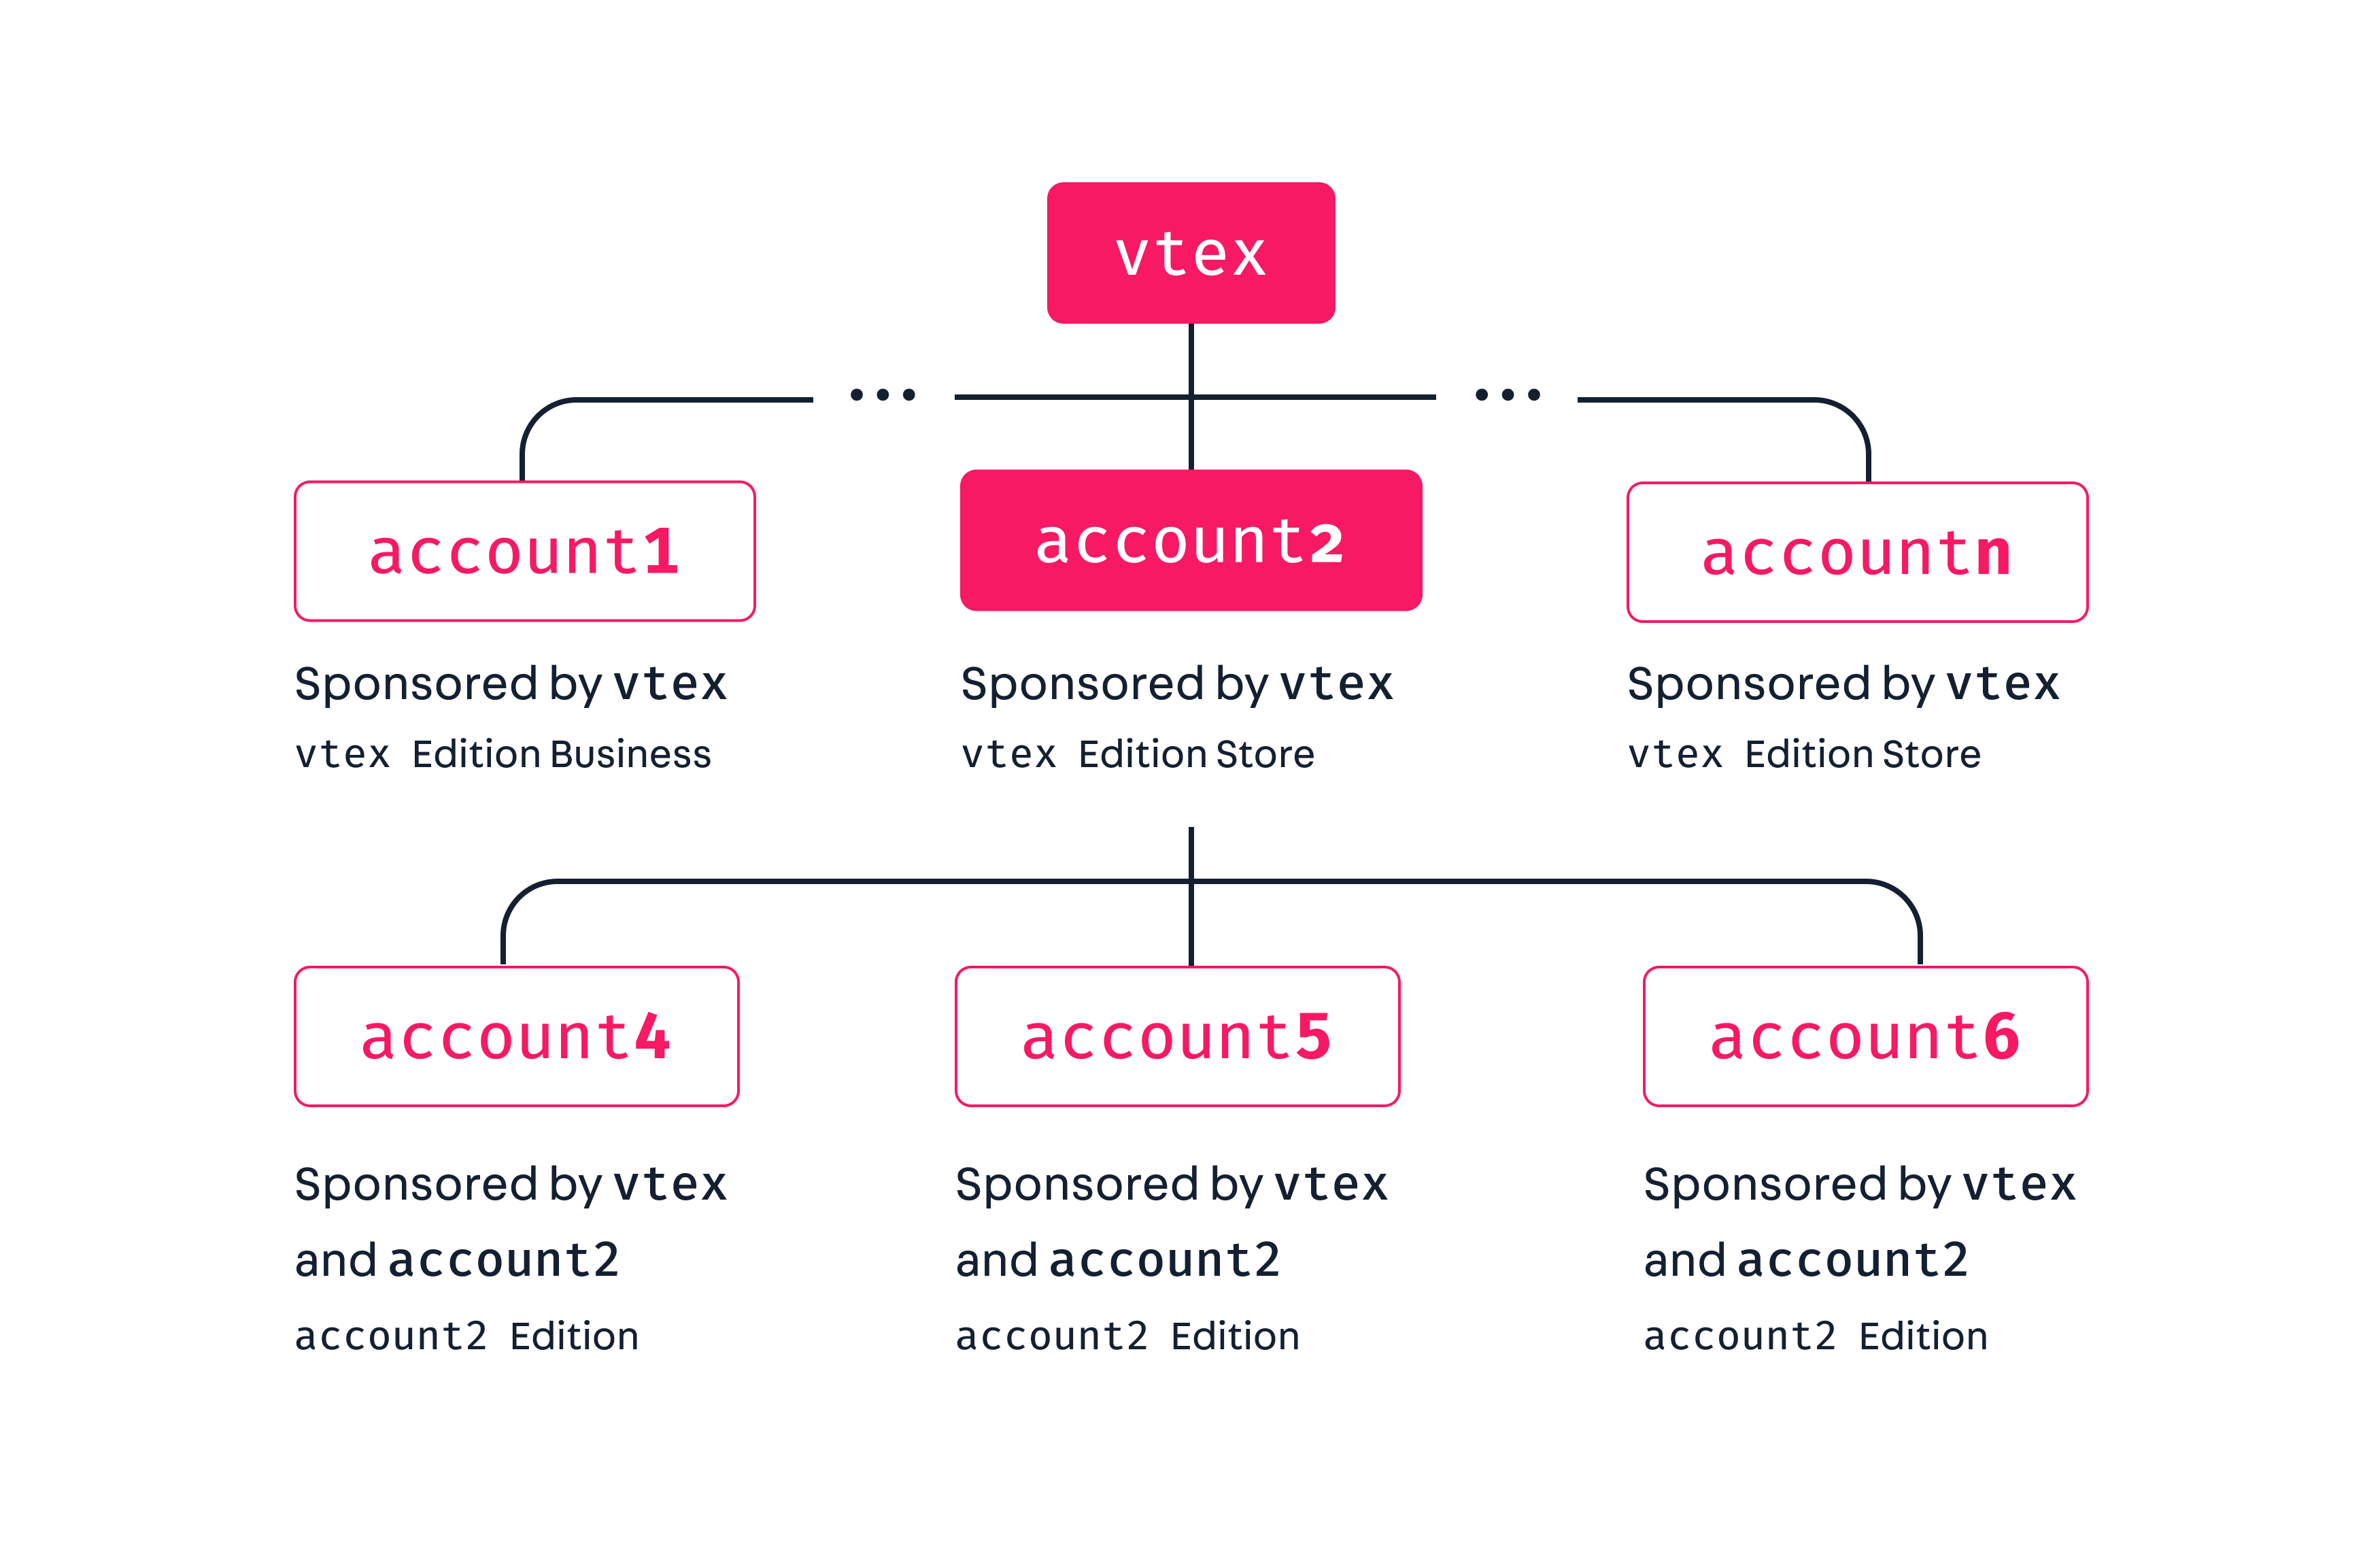 Accounts hierarchy